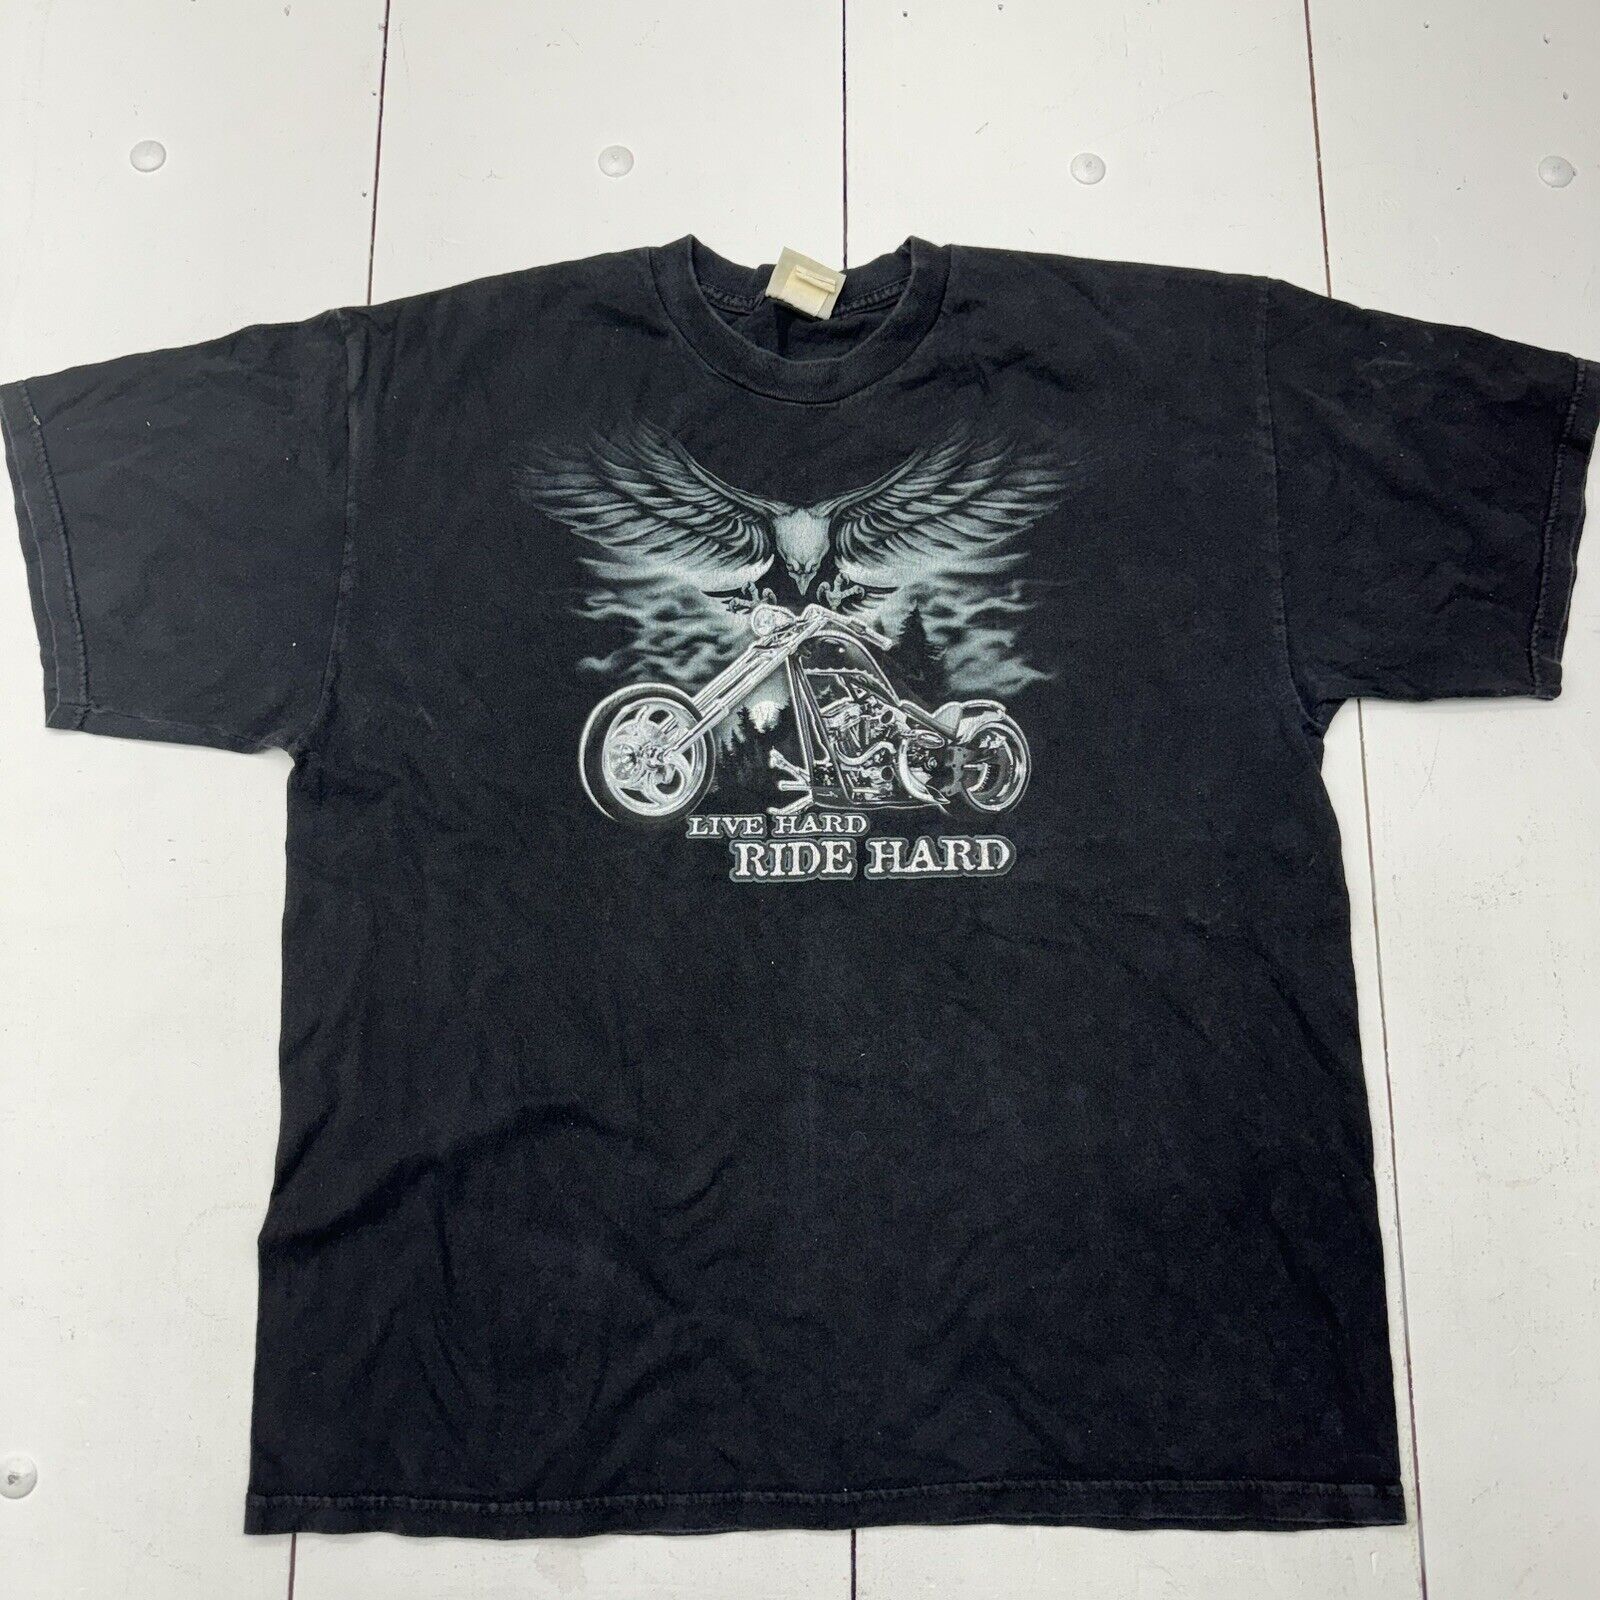 Vintage National Heritage Black ‘Live Hard Ride Hard’ T-Shirt Adult Size XL